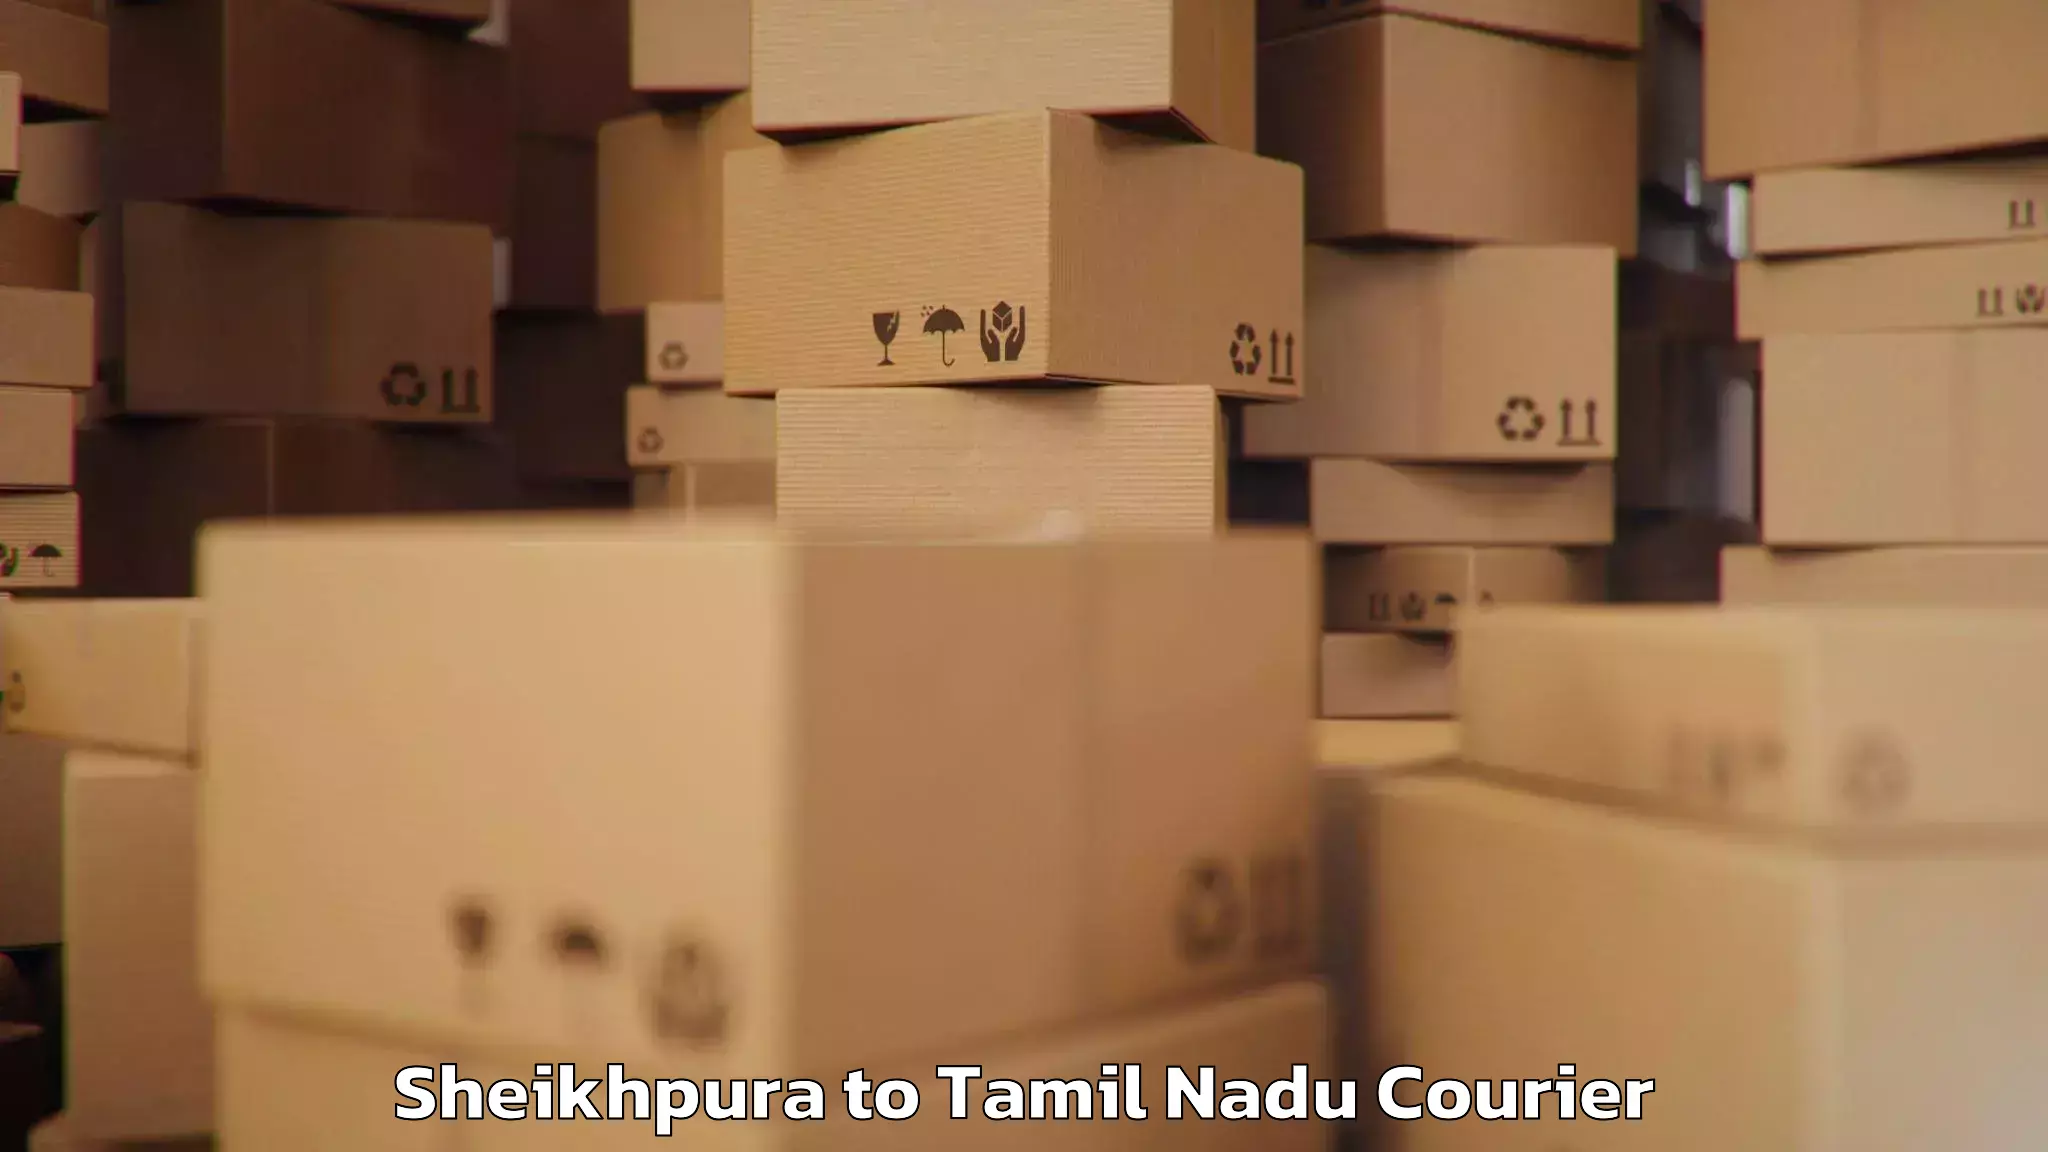 Door-to-door baggage service Sheikhpura to Tamil Nadu